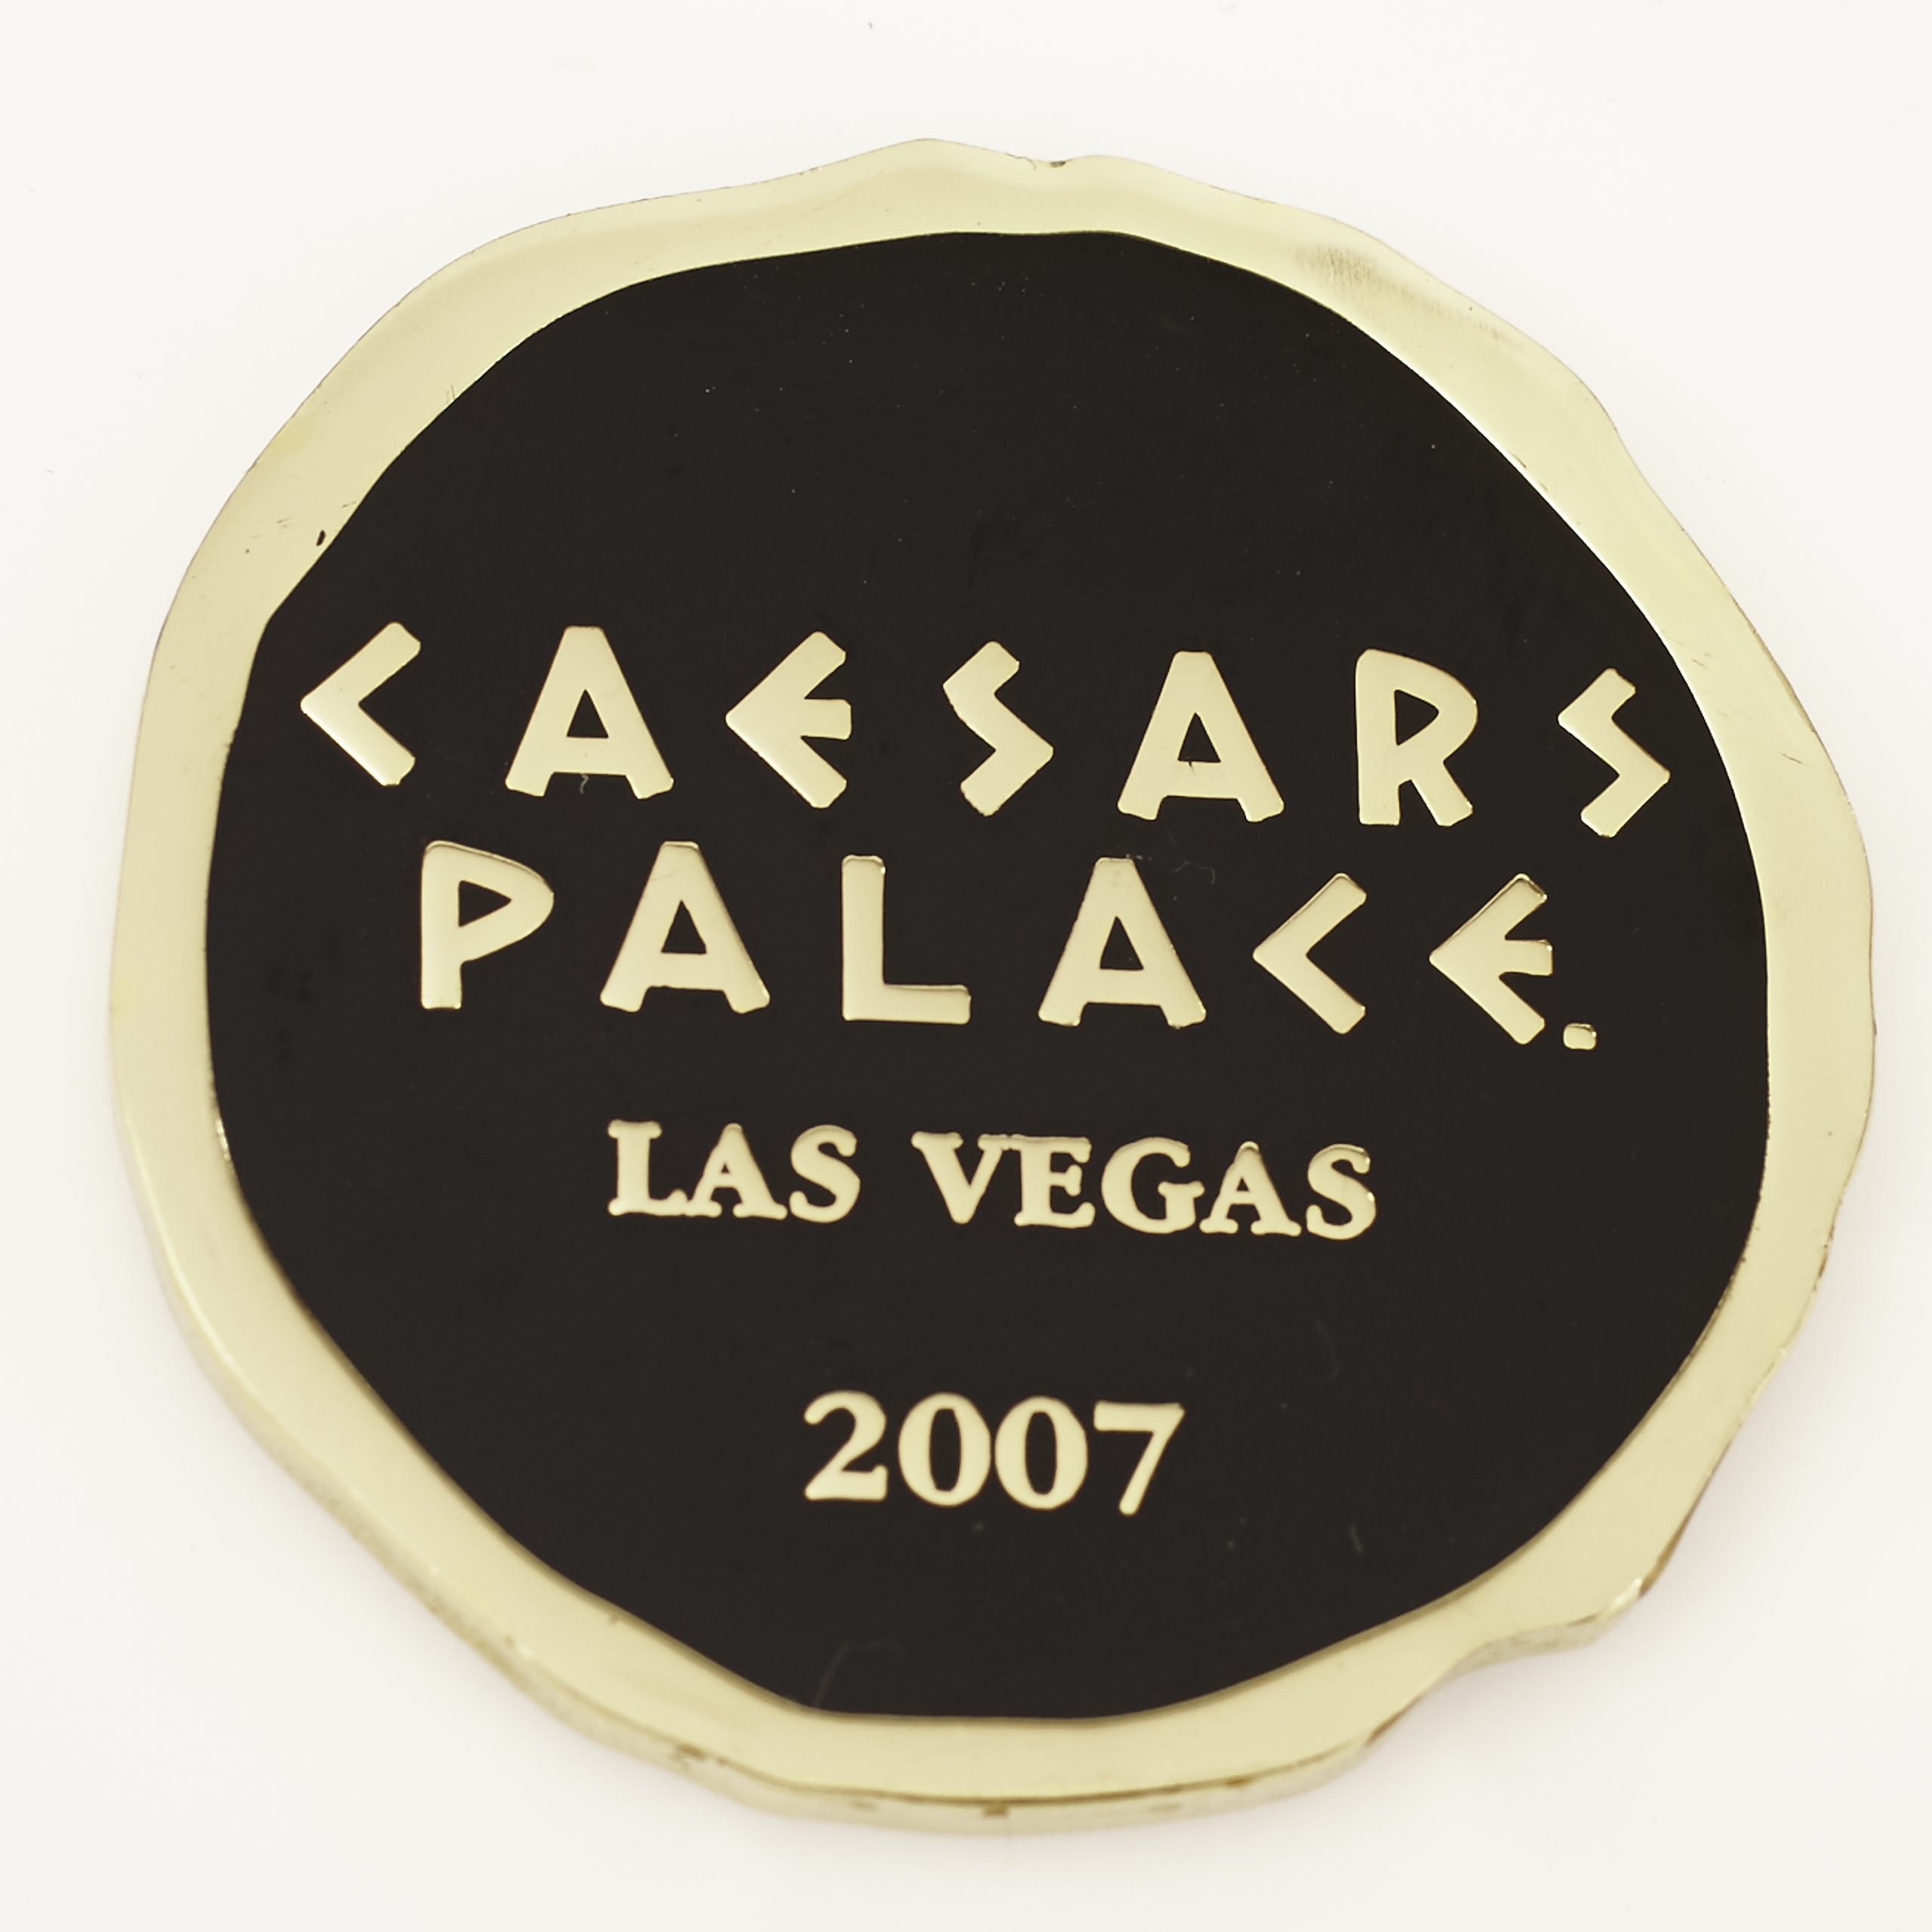 CAESARS PALACE LAS VEGAS 2007, Poker Card Guard